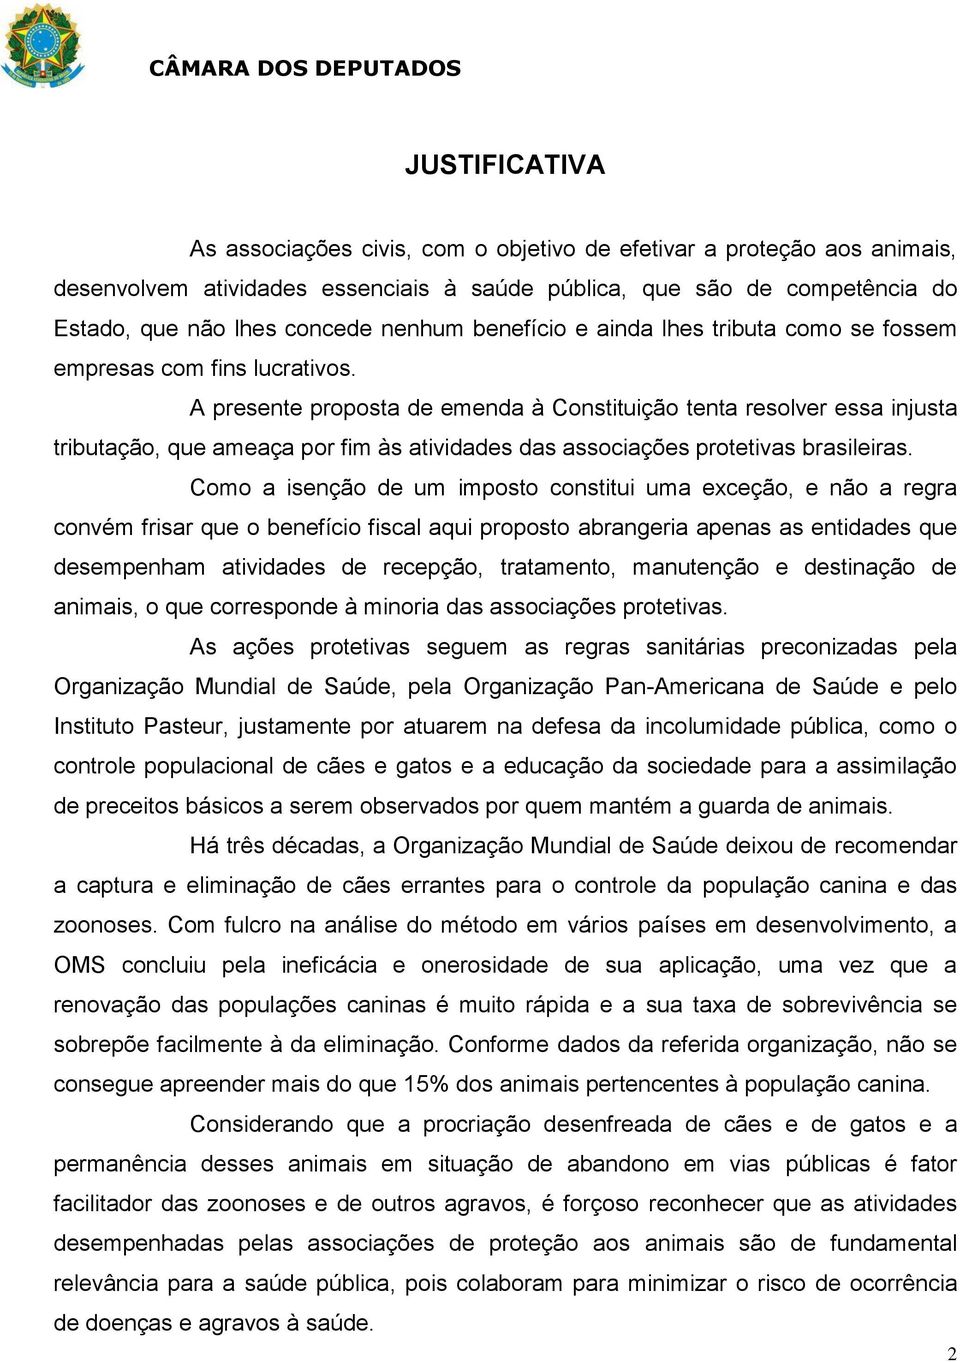 A presente proposta de emenda à Constituição tenta resolver essa injusta tributação, que ameaça por fim às atividades das associações protetivas brasileiras.